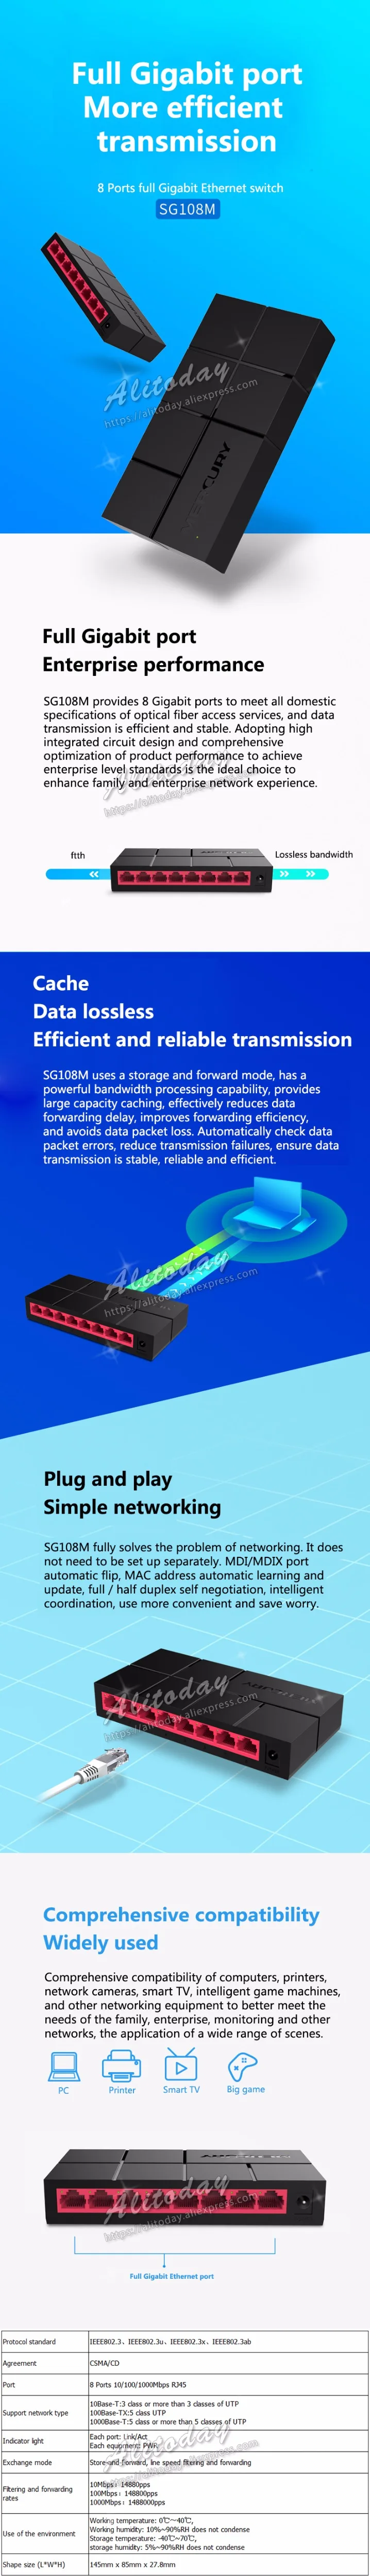 Mercury гигабитный коммутатор 8 портов сетевой коммутатор хаб настольное переключатель для быстрой работы в сети этернет на полный или полудуплекс обмена(SG108M